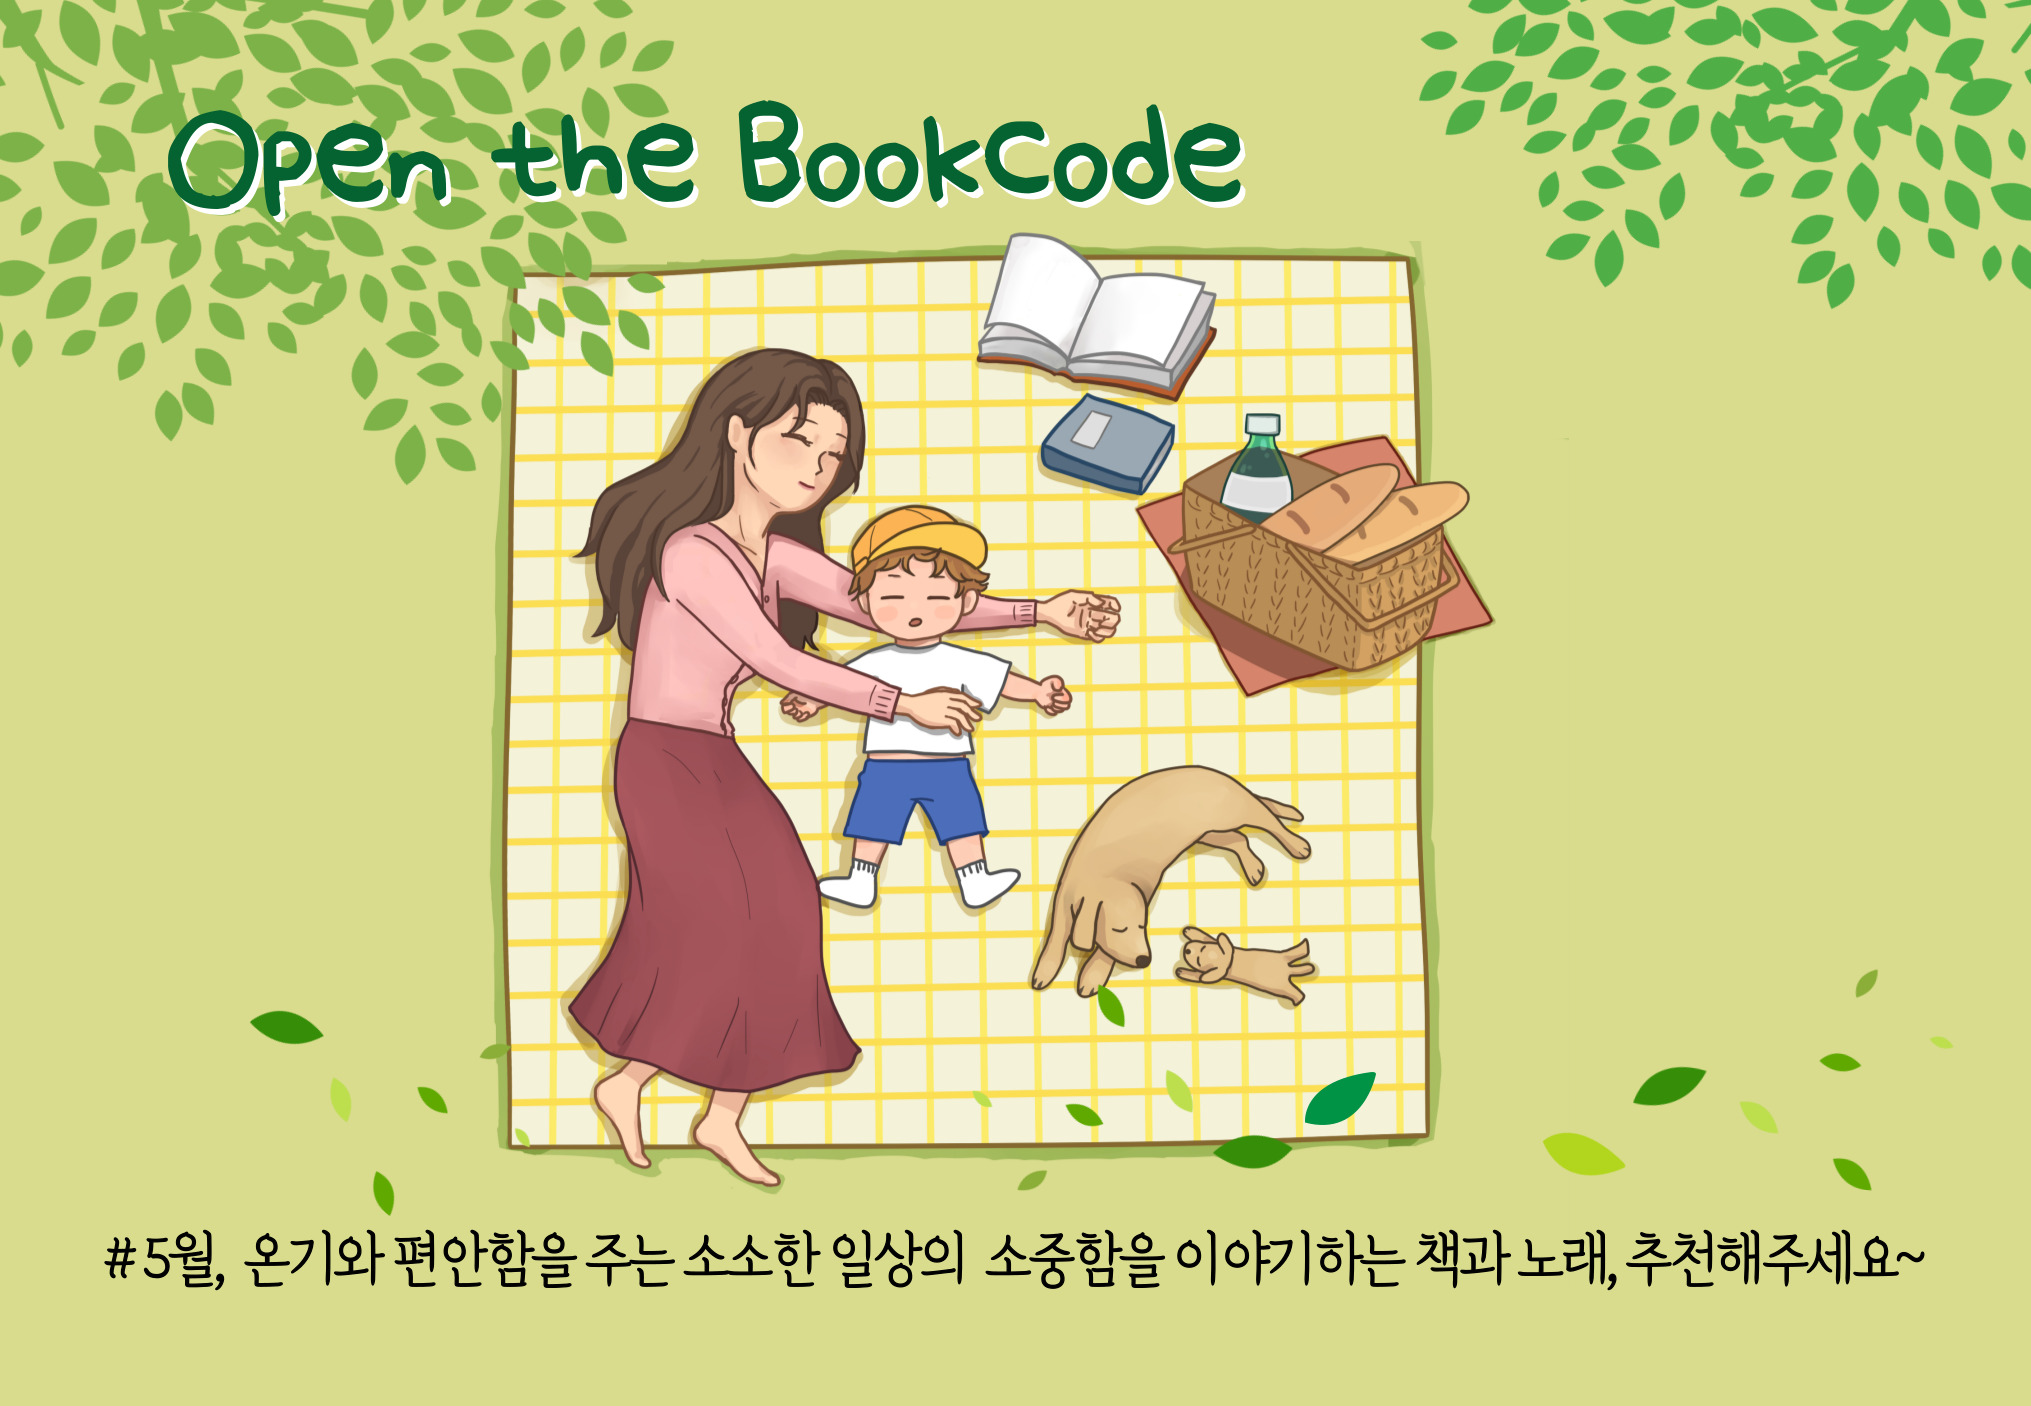 Open the Bookcode # 5월, 온기와 편안함을 주는 소소한 일상의 소중함을 이야기하는 책과 노래, 추천해주세요~